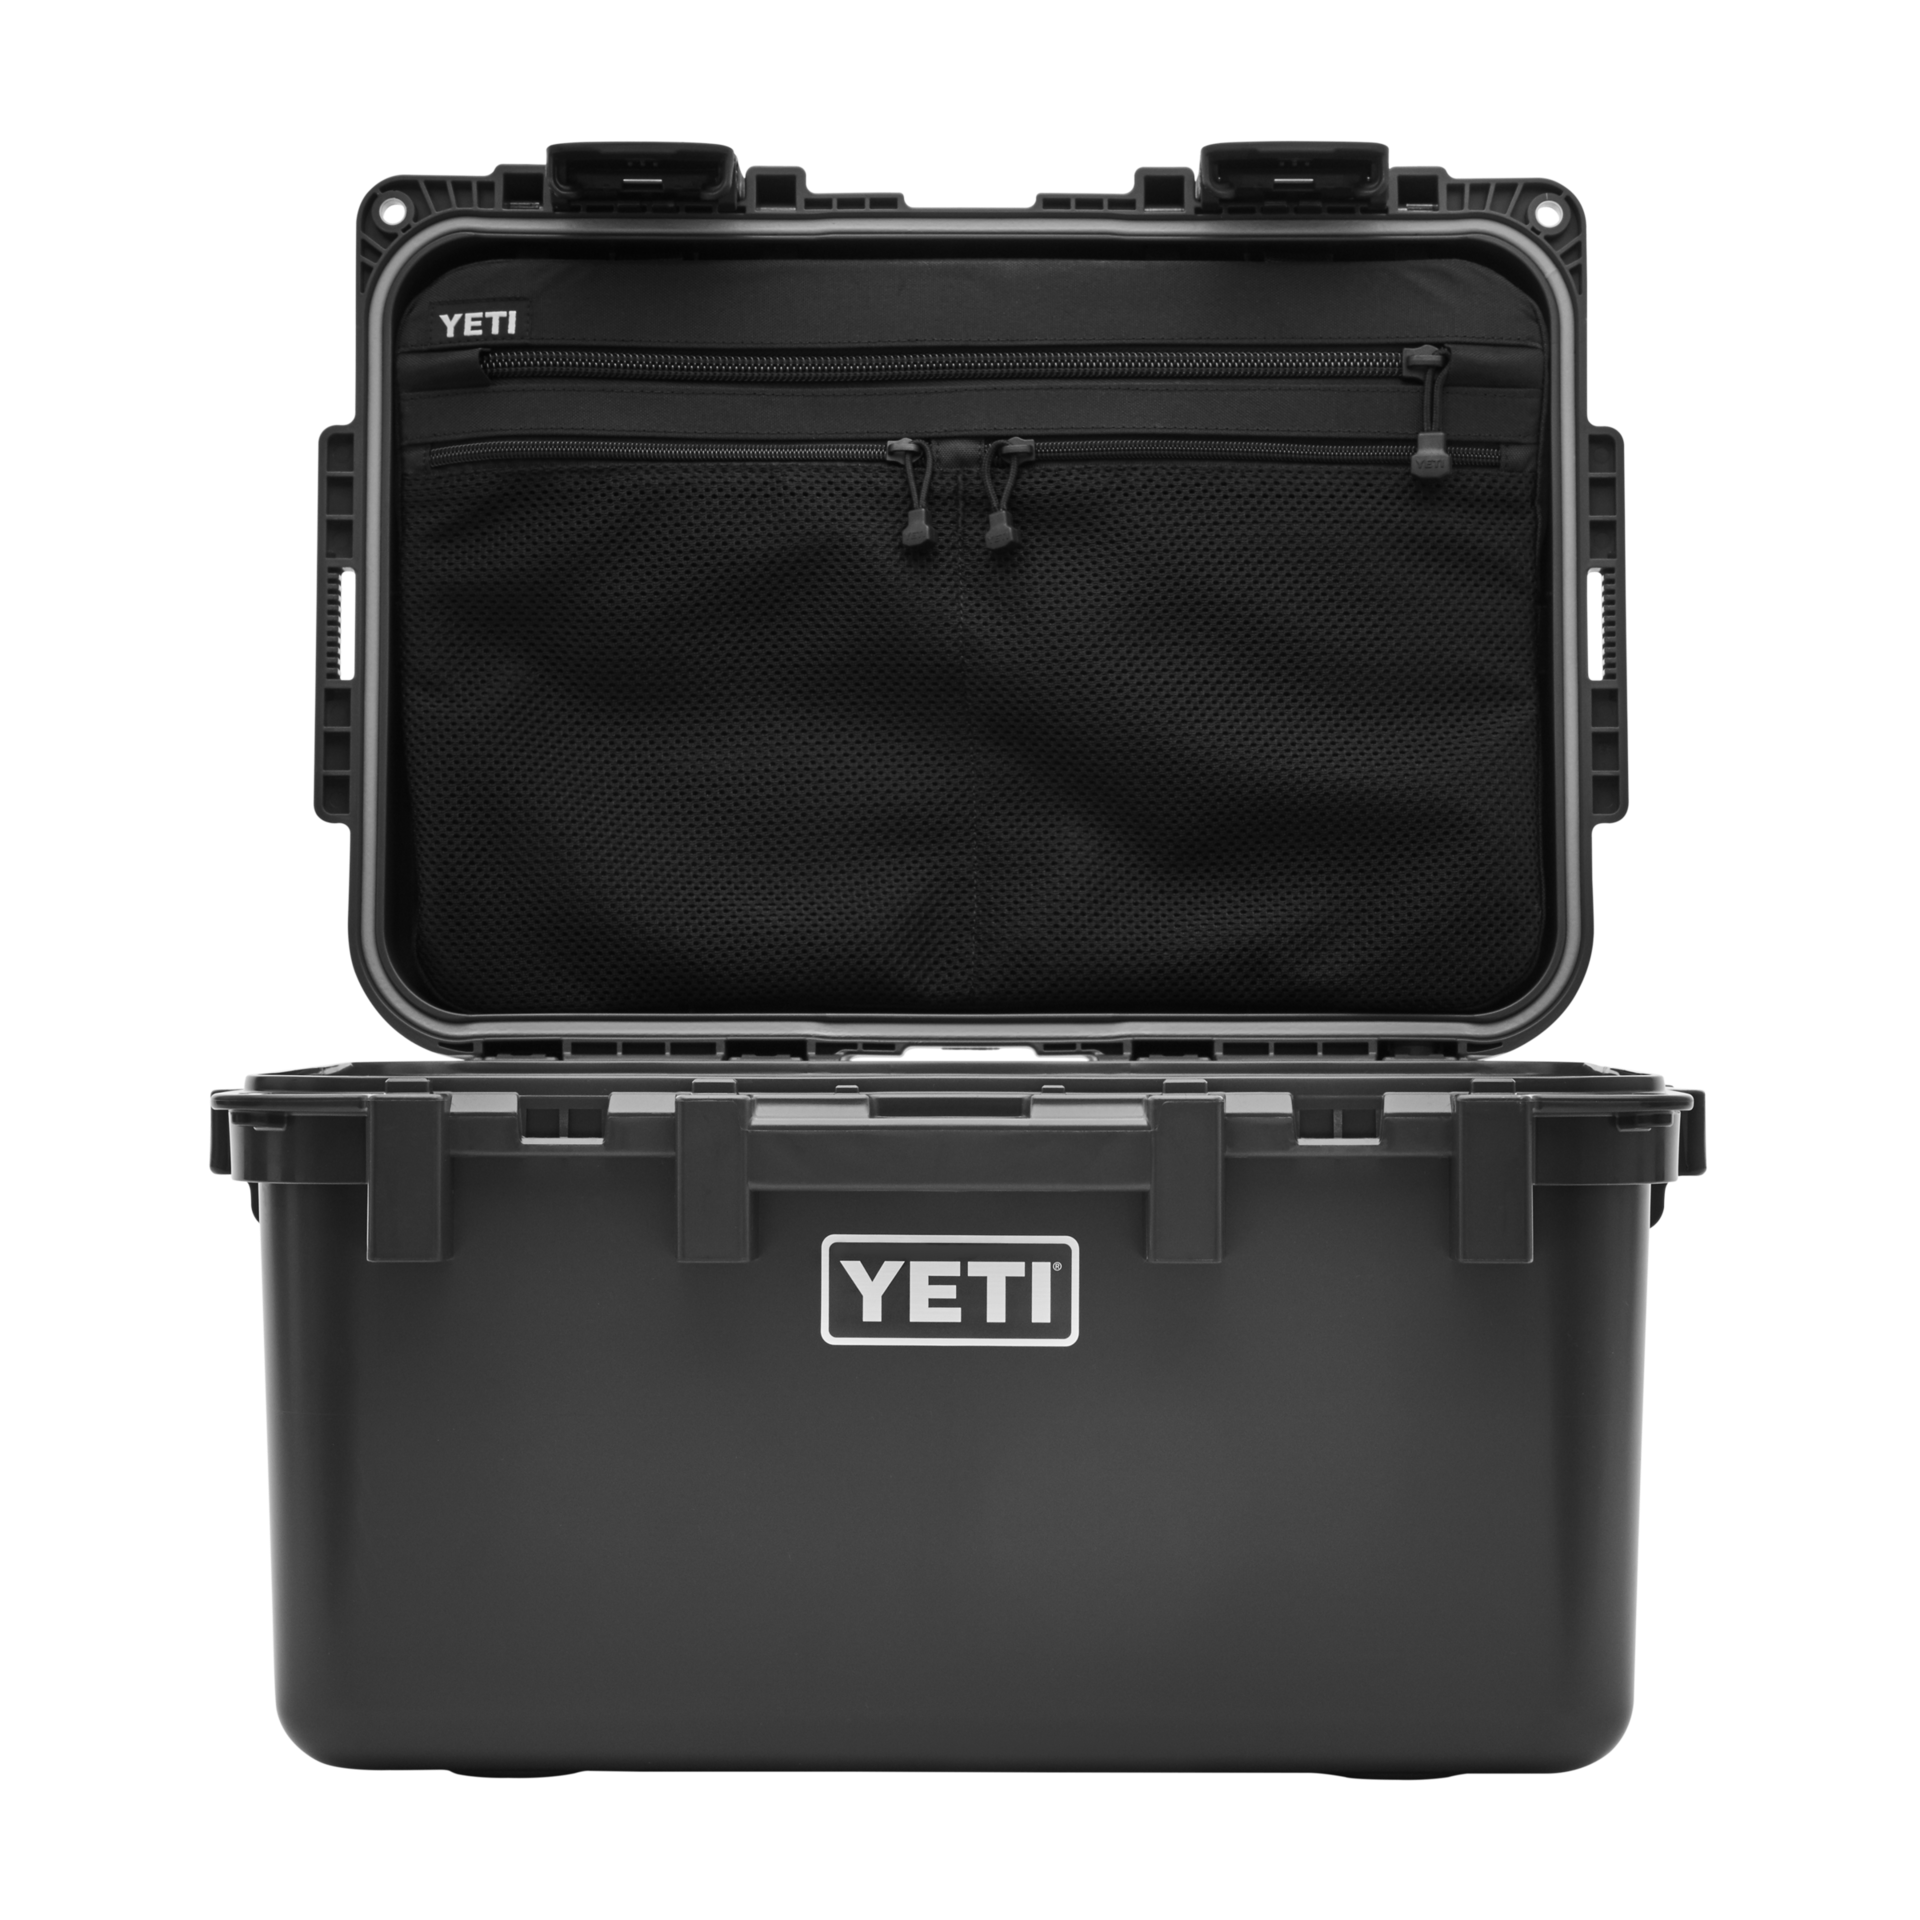 YETI / Loadout Gobox 30 Gear Case - Tan